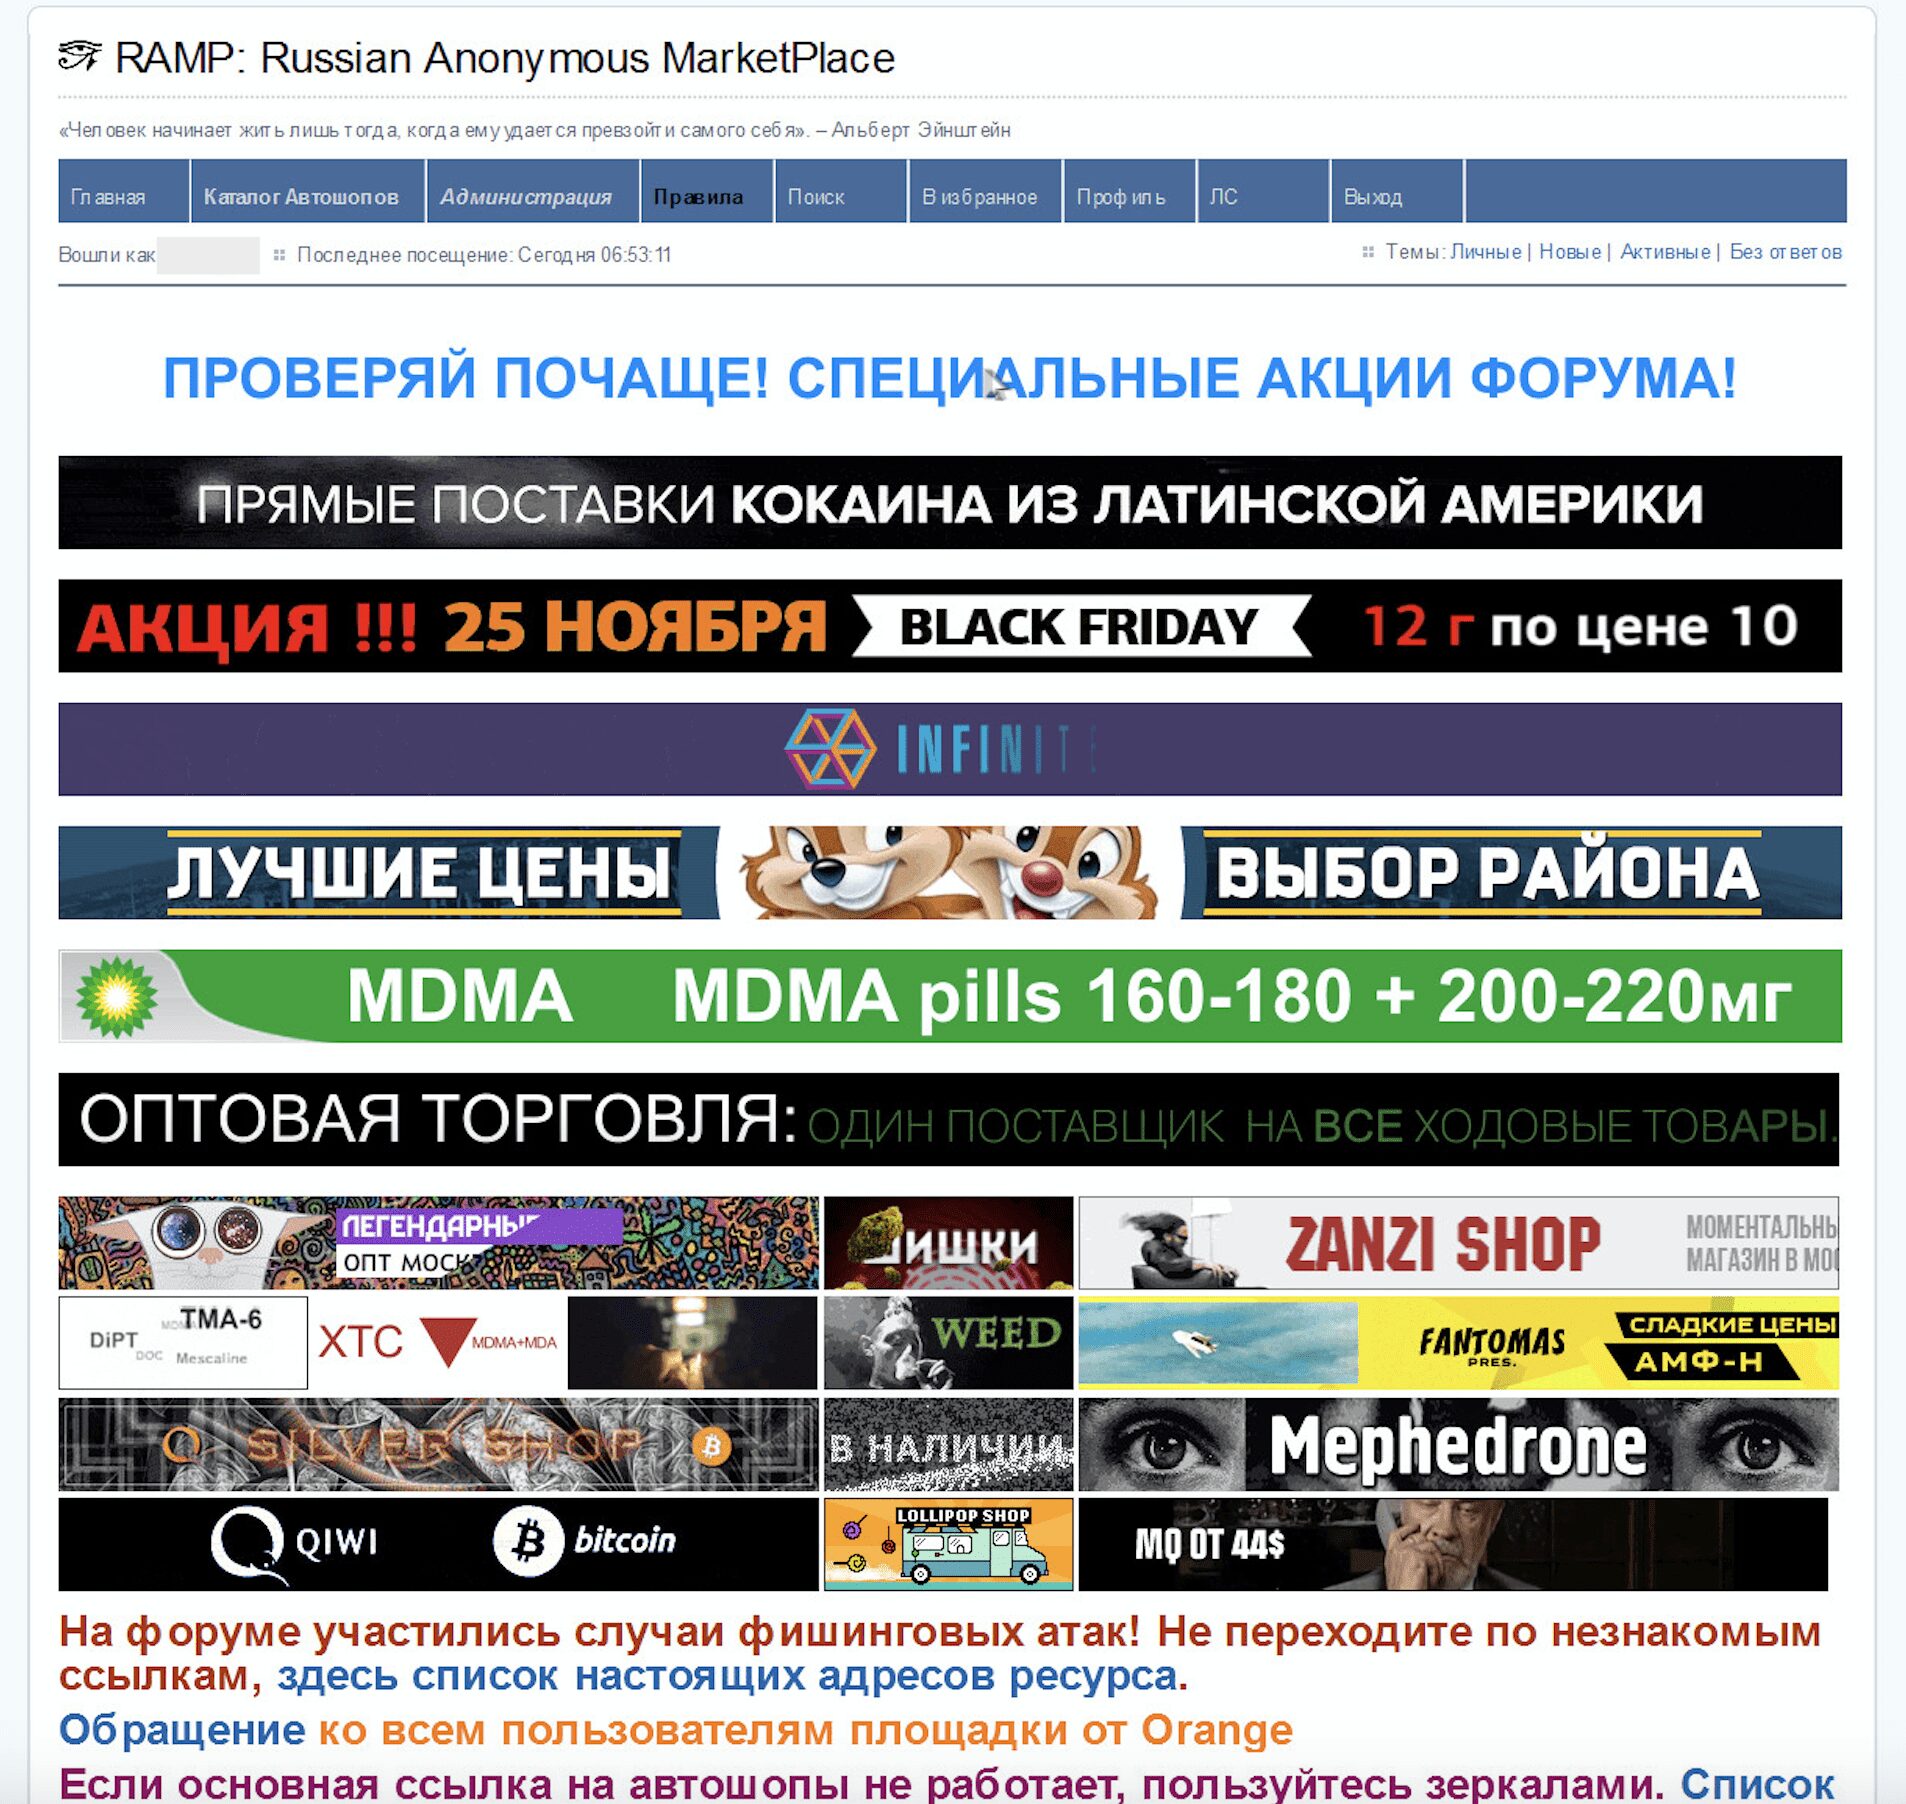 Darknet sites list russian mega2web tor browser advor mega вход